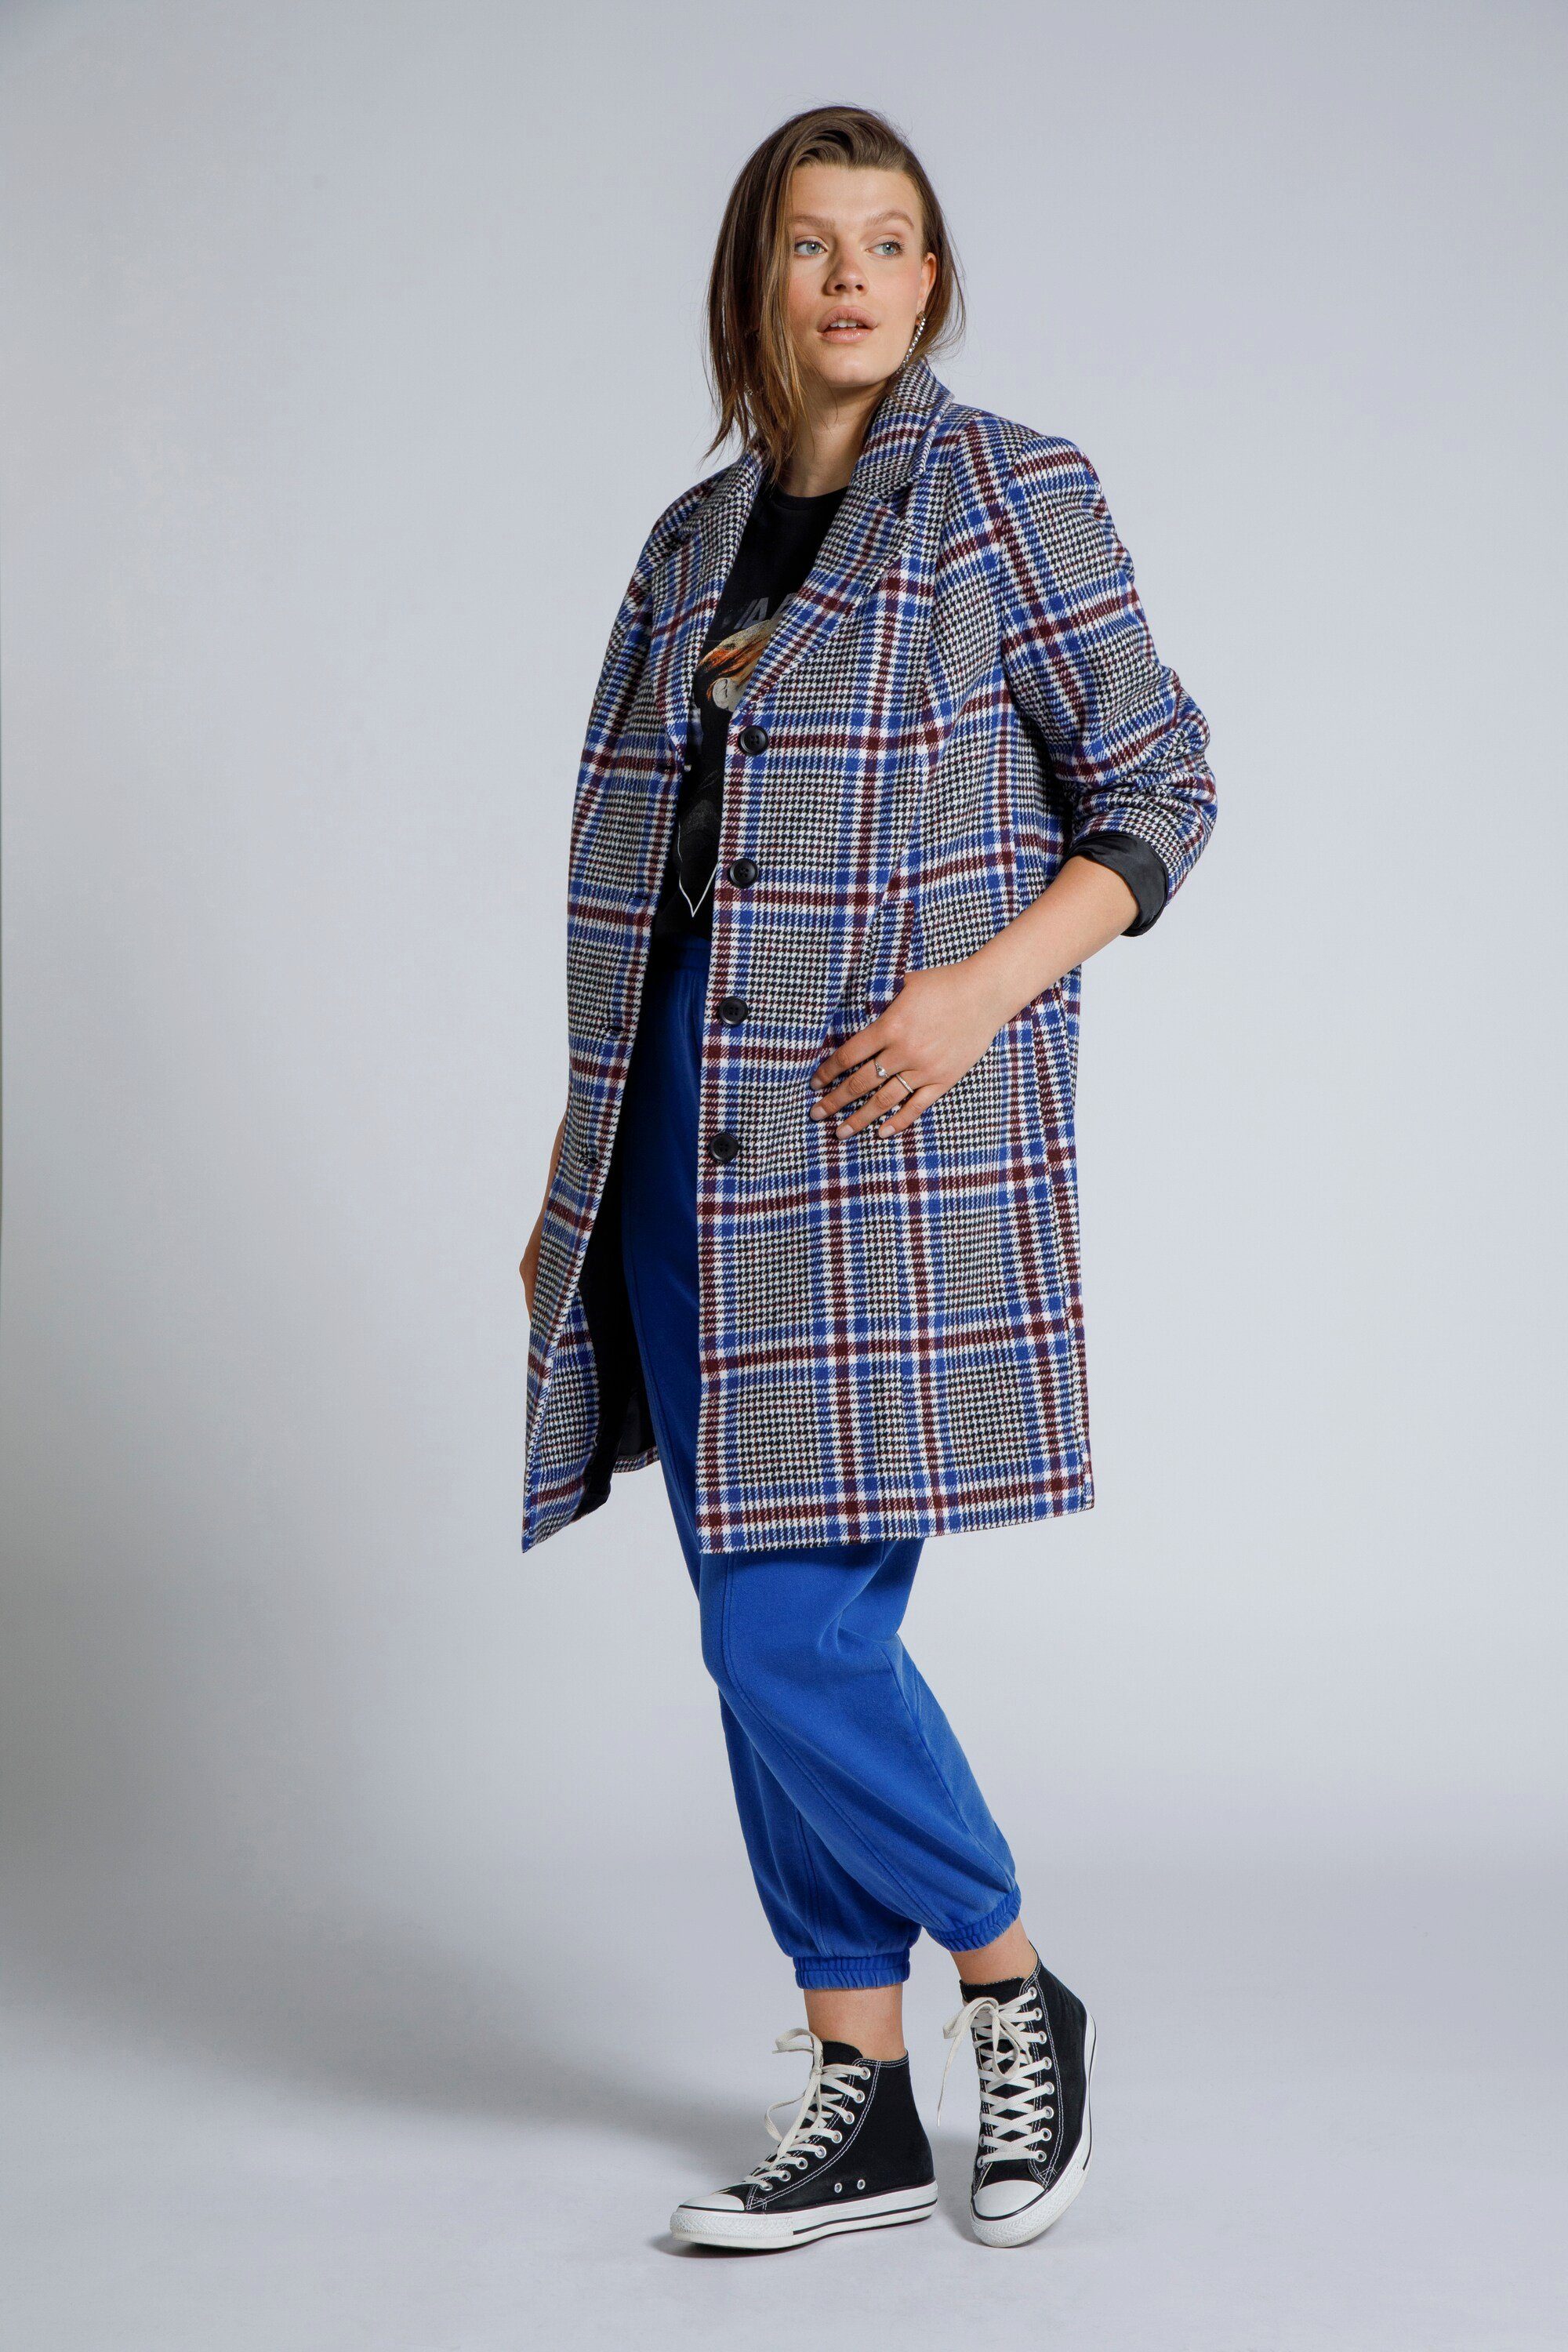 Damen karierter Mantel online kaufen | OTTO